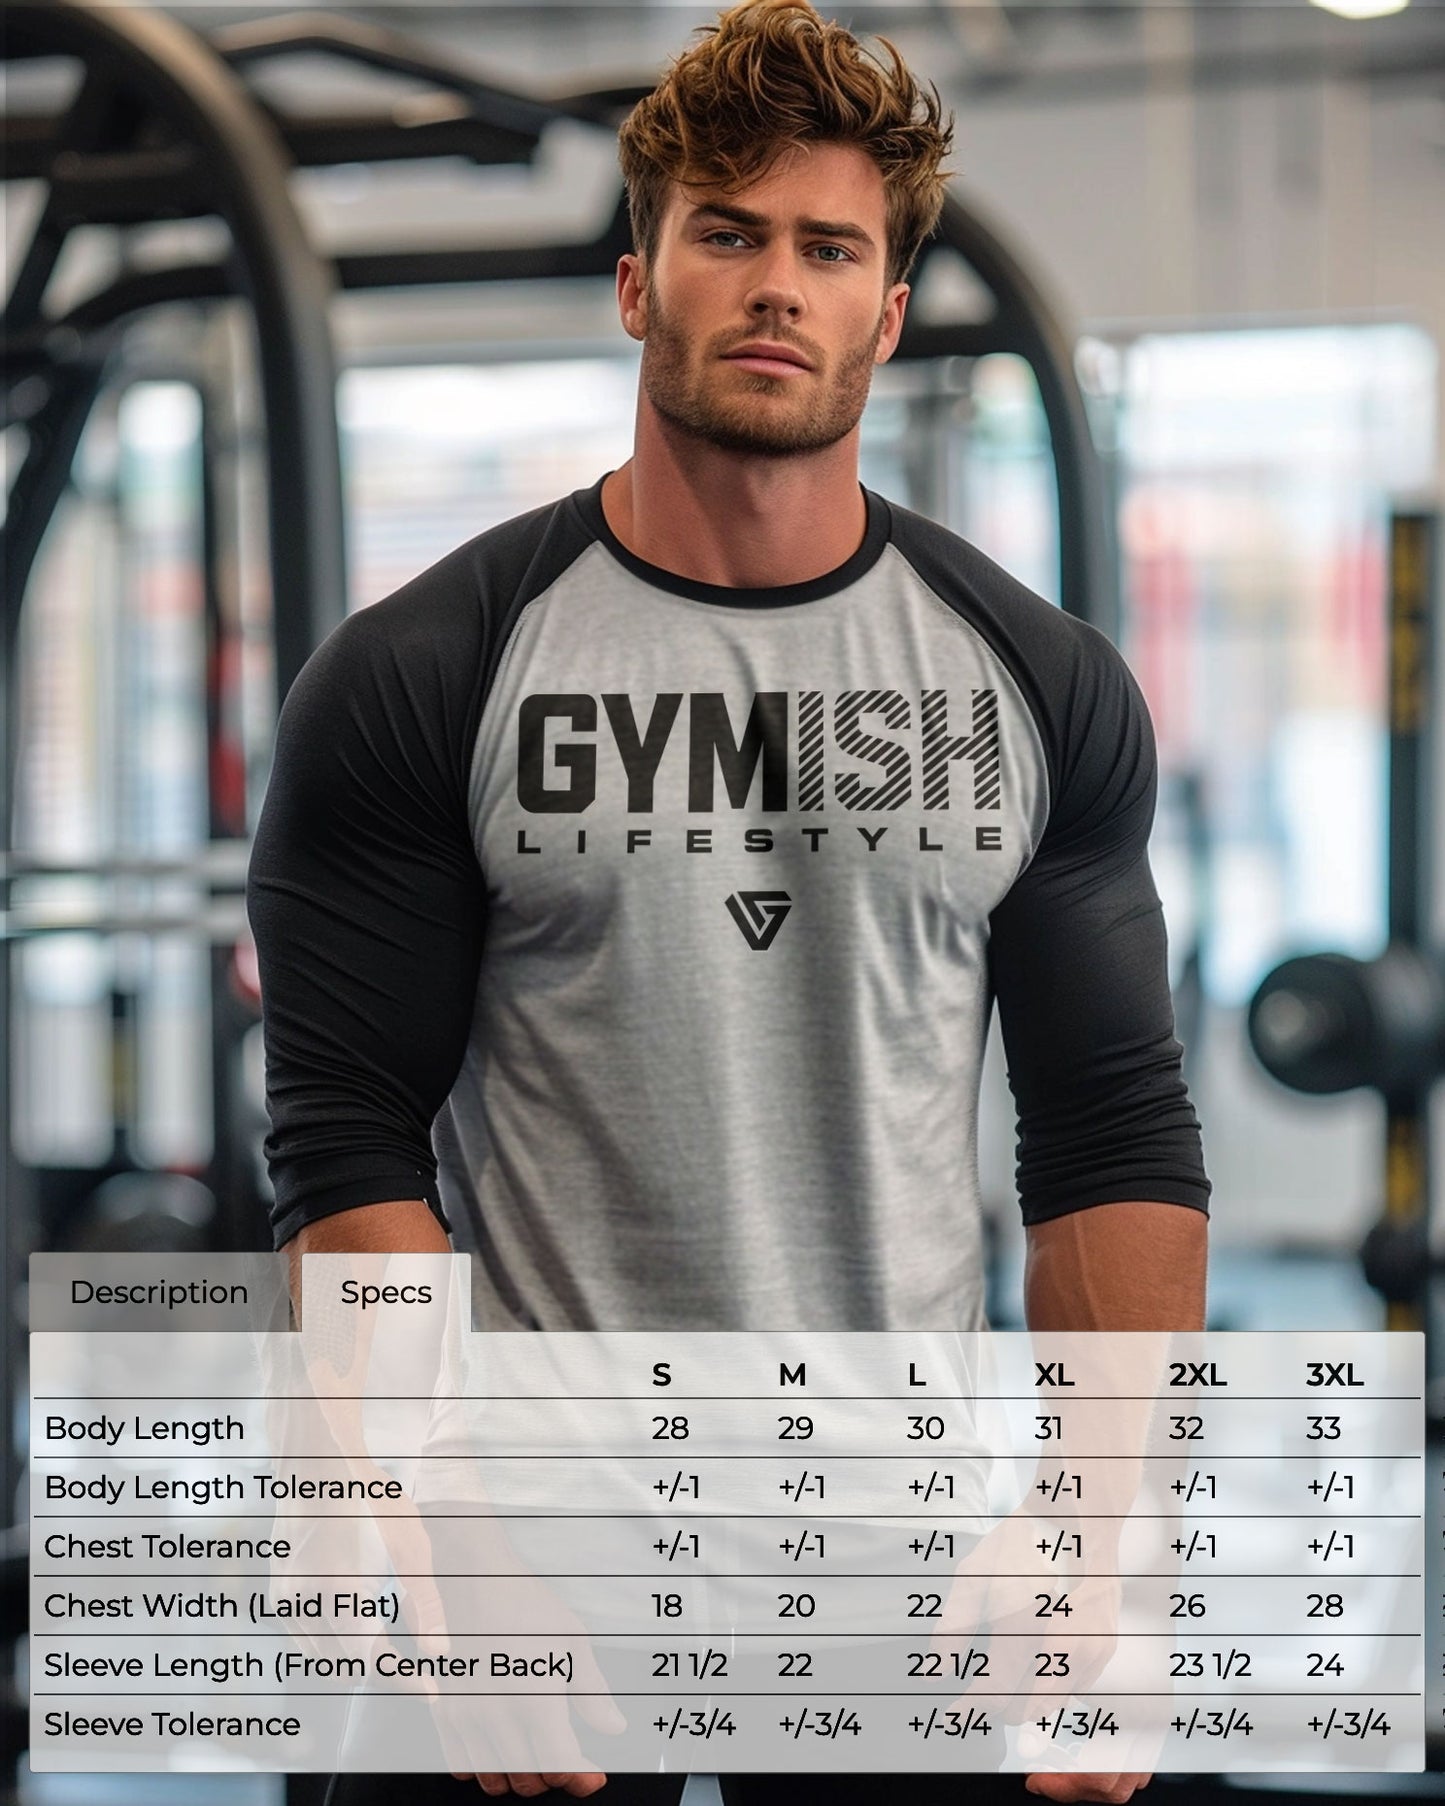 68- RAGLAN GYMISH 3 Workout Gym T-Shirt for Men